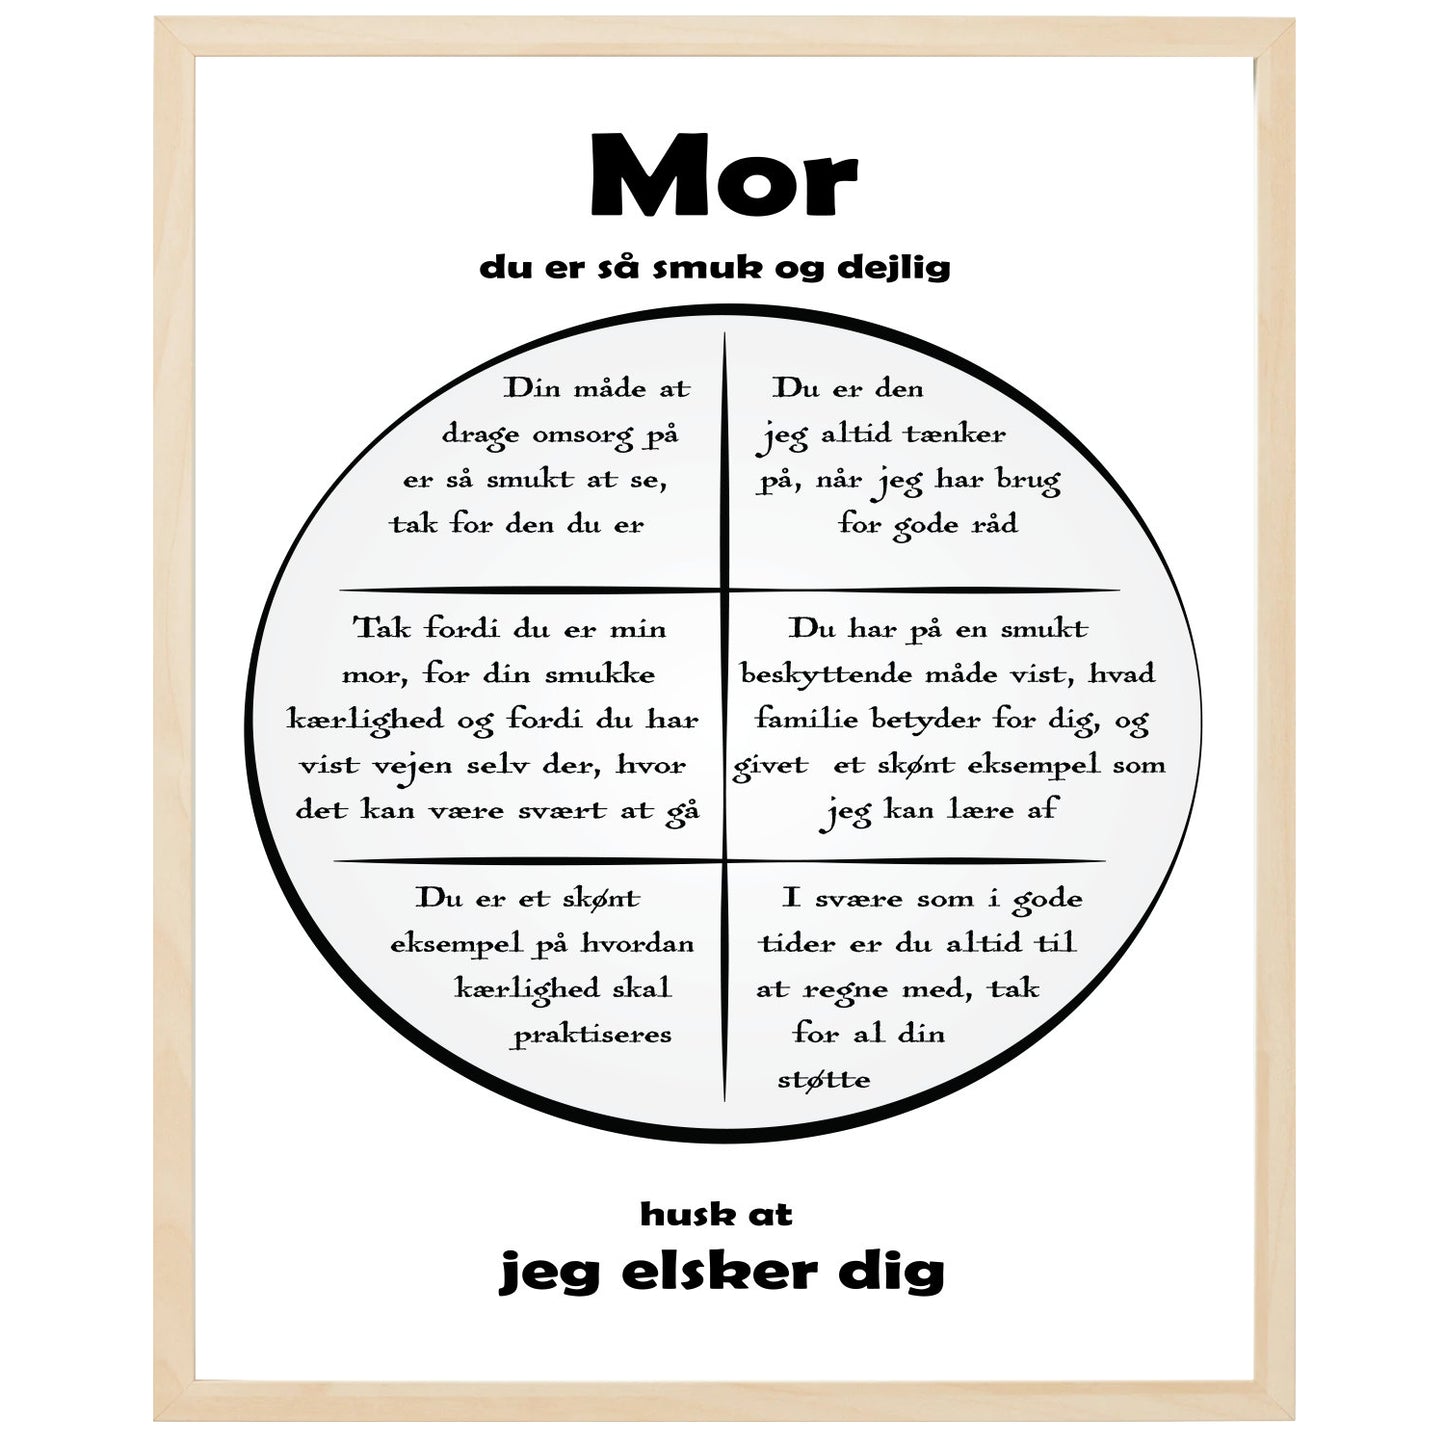 En plakat med overskriften Mor, en rustik cirkel og indeni cirklen mange positive sætninger som beskriver en Mor